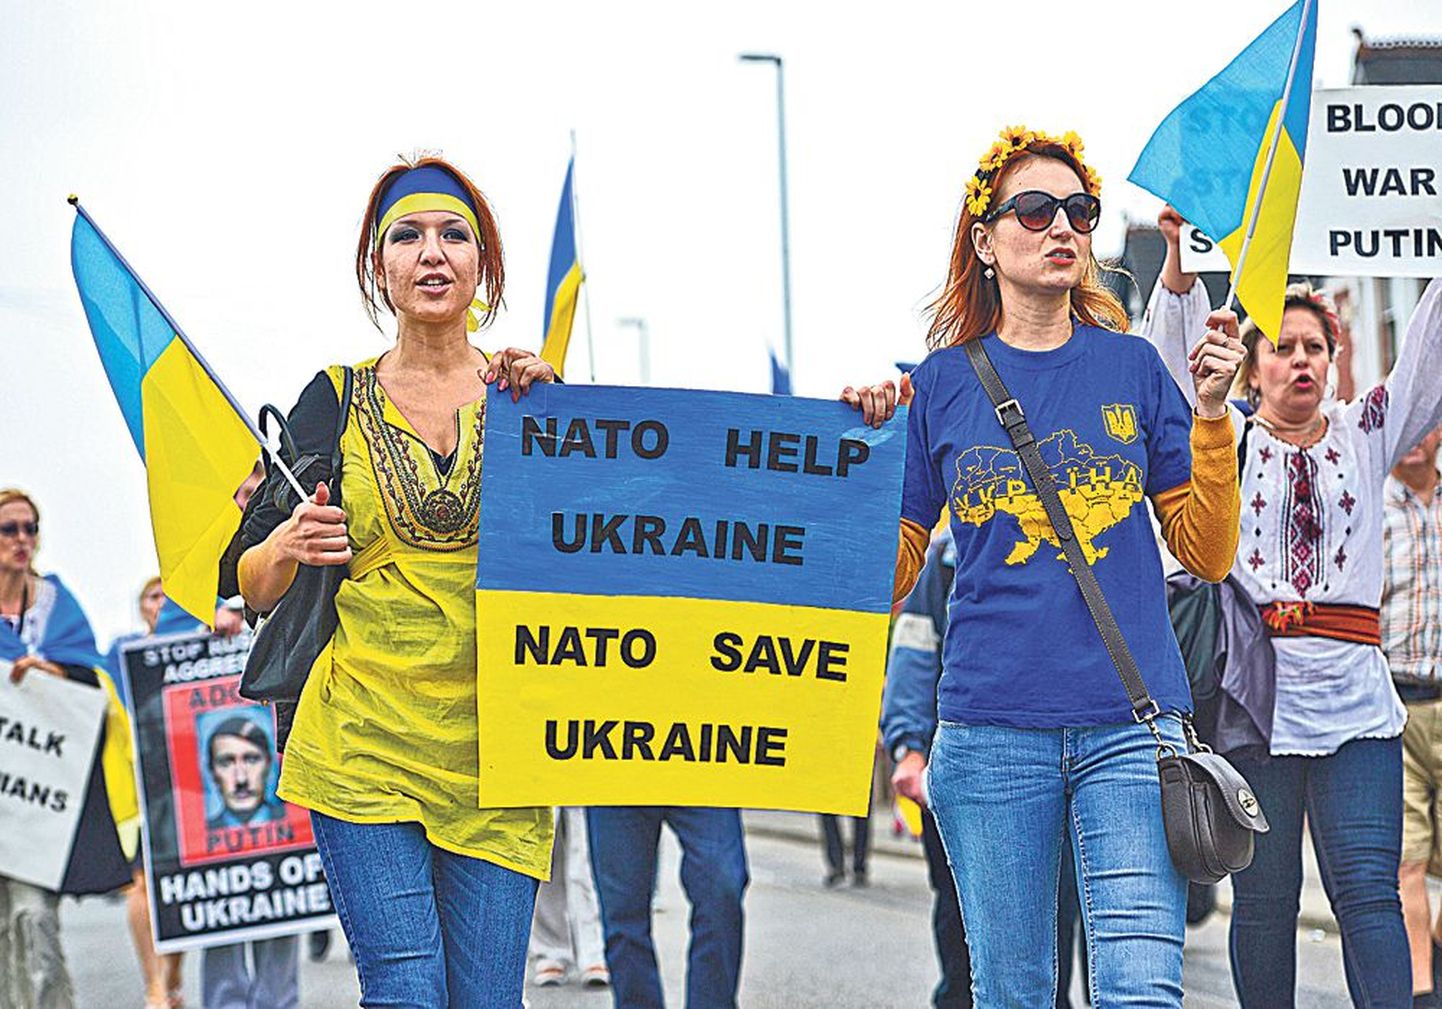 Wales'i tippkohtumisel ringi liikunud meeleavaldajad, kes meenutasid, kui väga Ukraina NATO abile loodab.